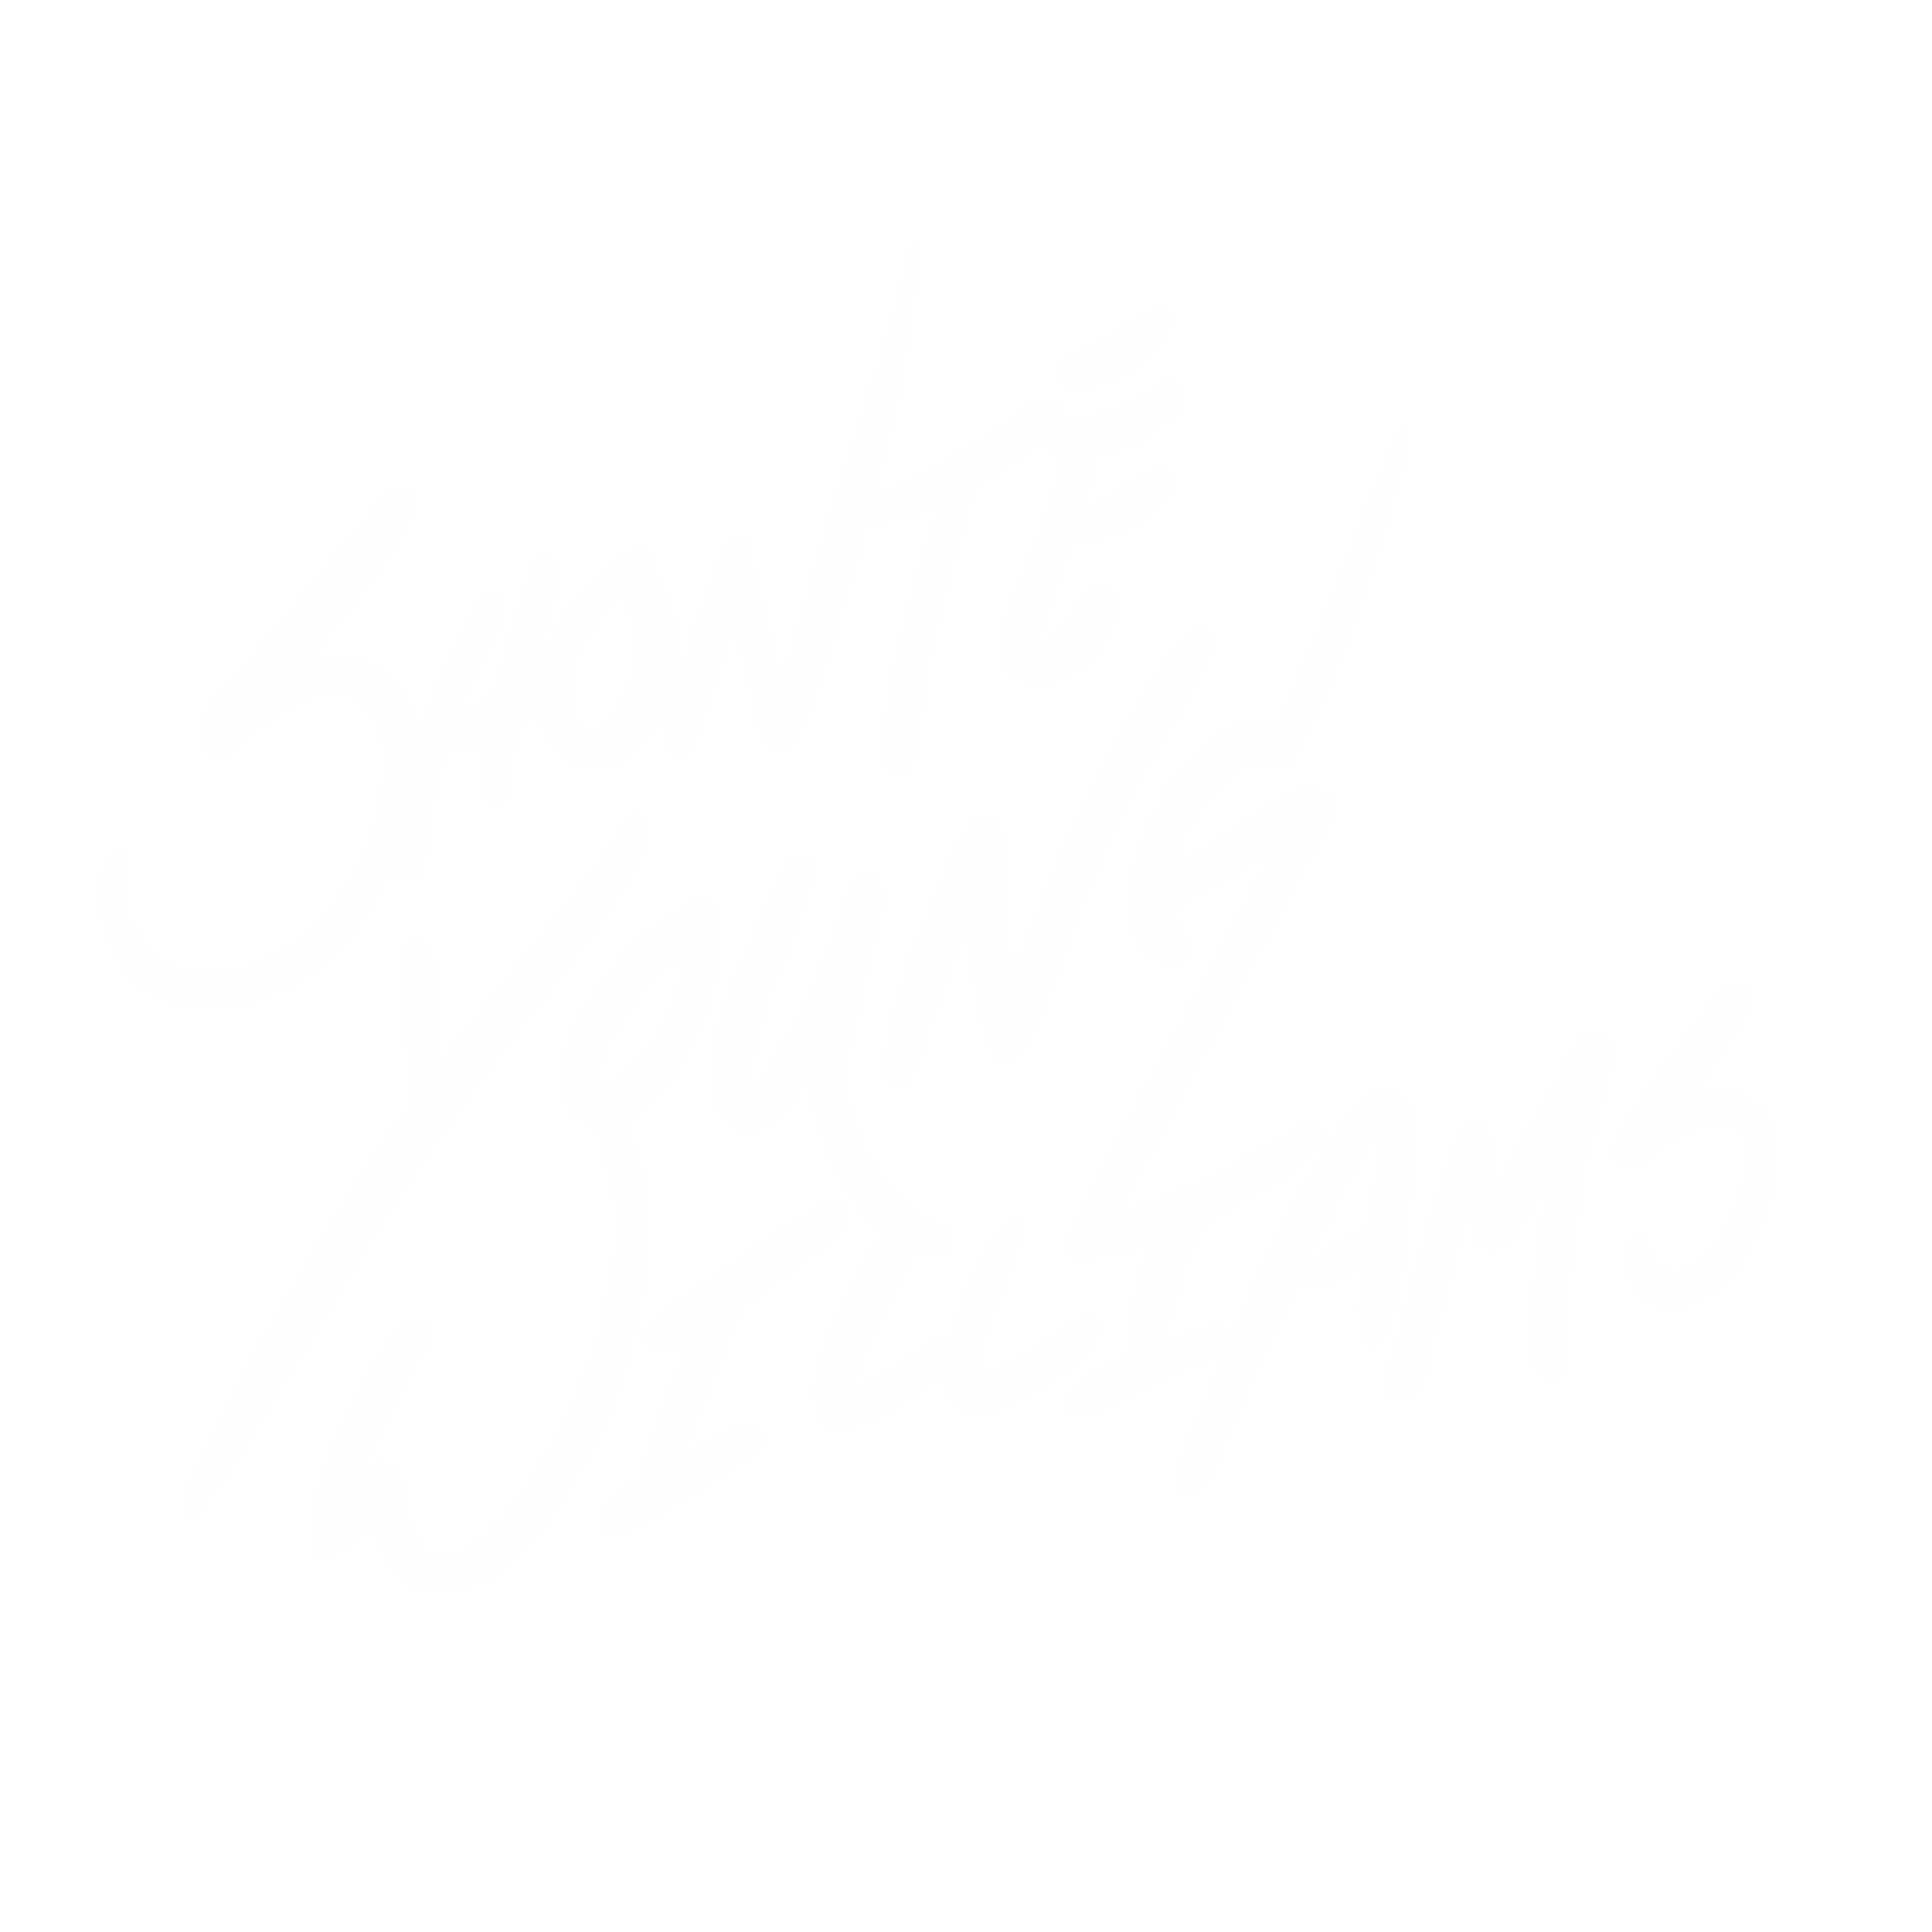 Shonté Young Williams